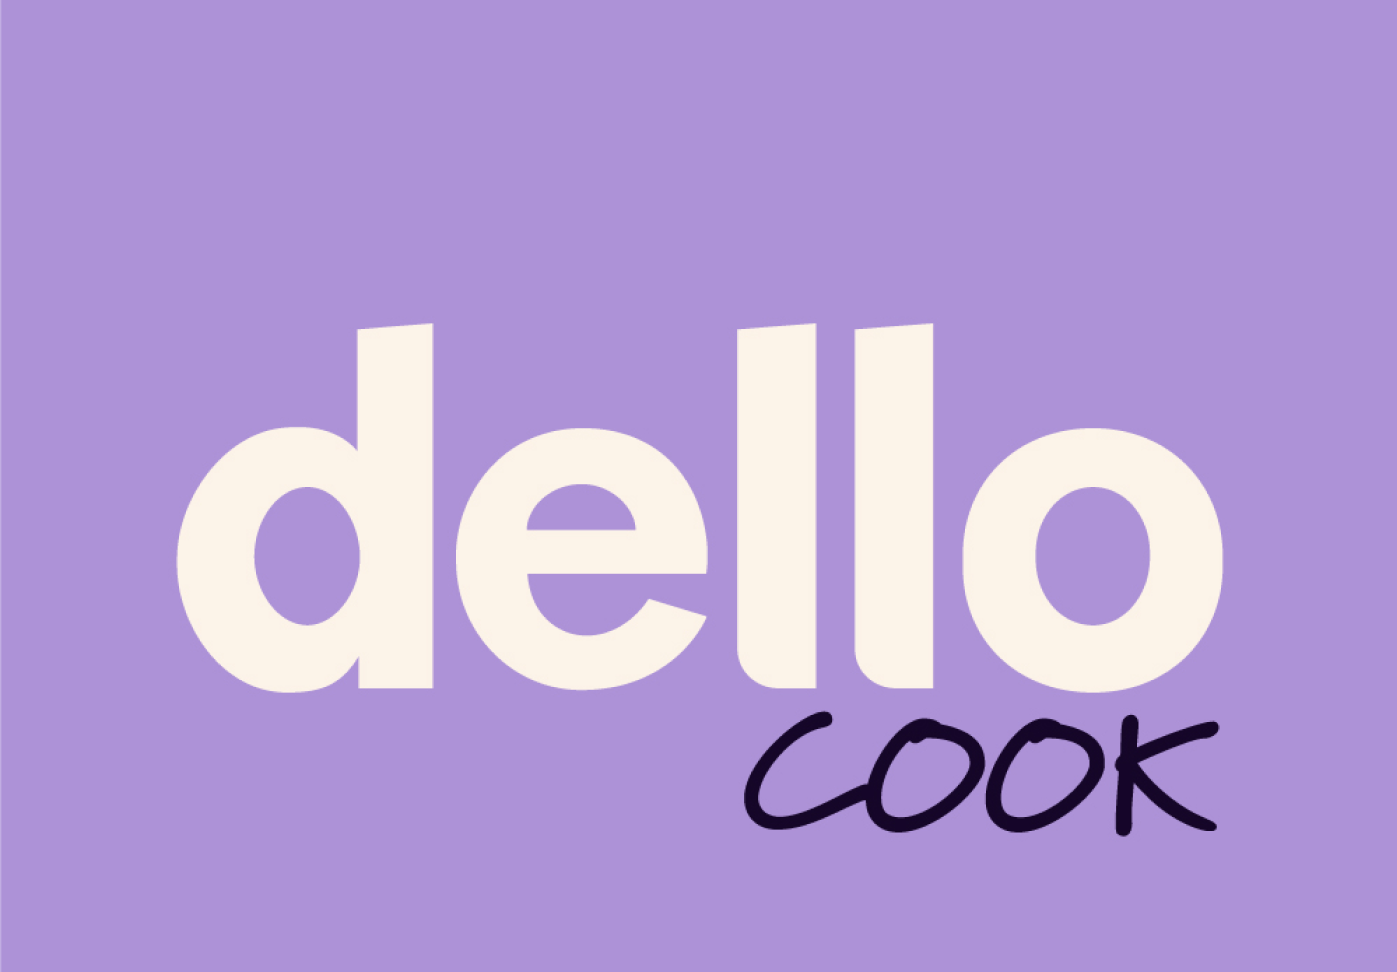 Dello Cook logo